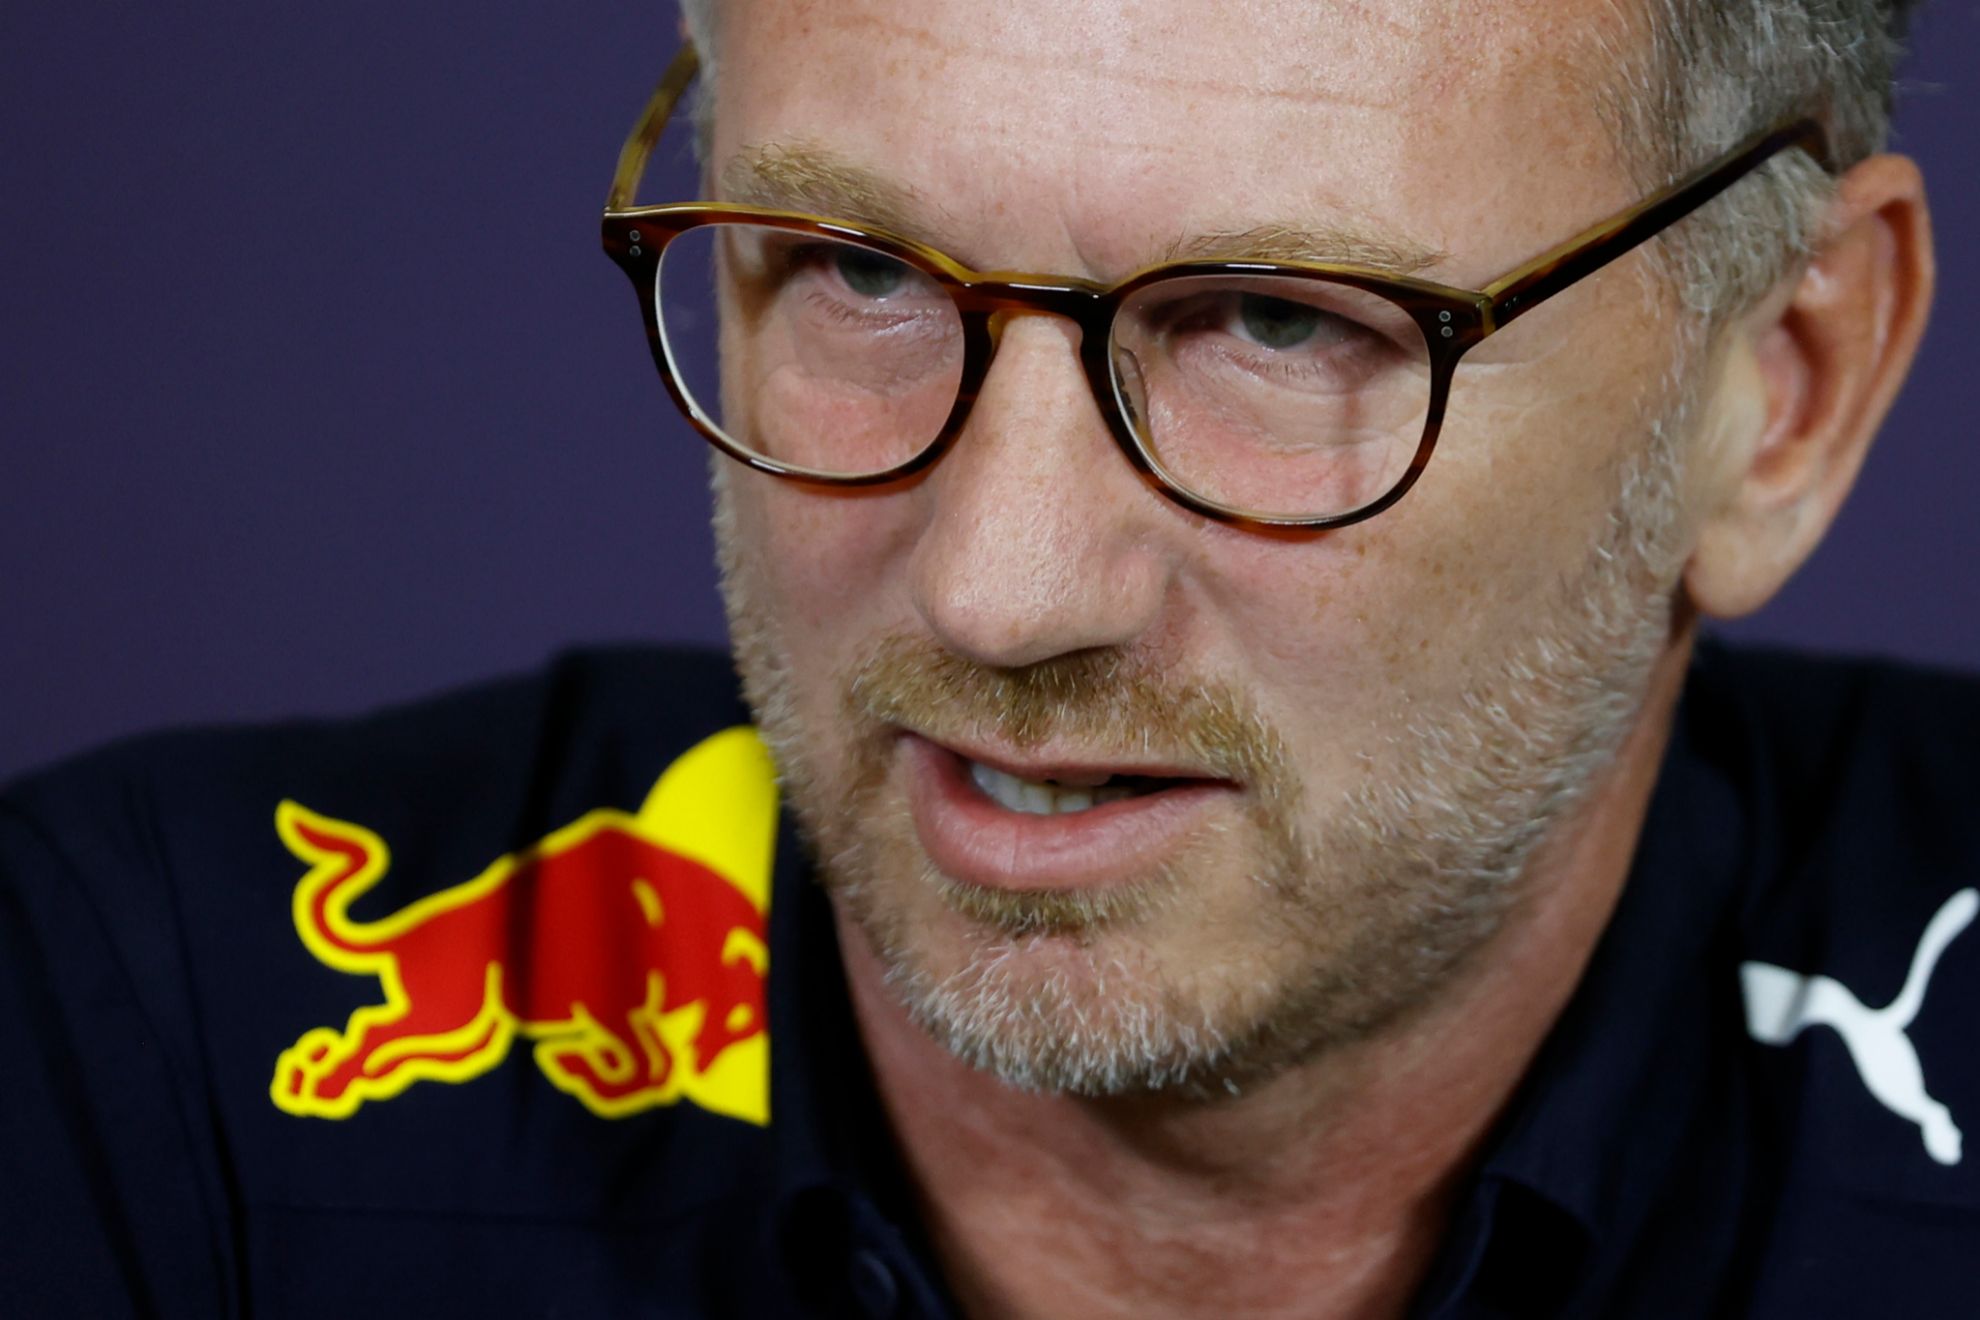 El jefe de equipo de Red Bull calific la multa de "draconiana" y "enorme".